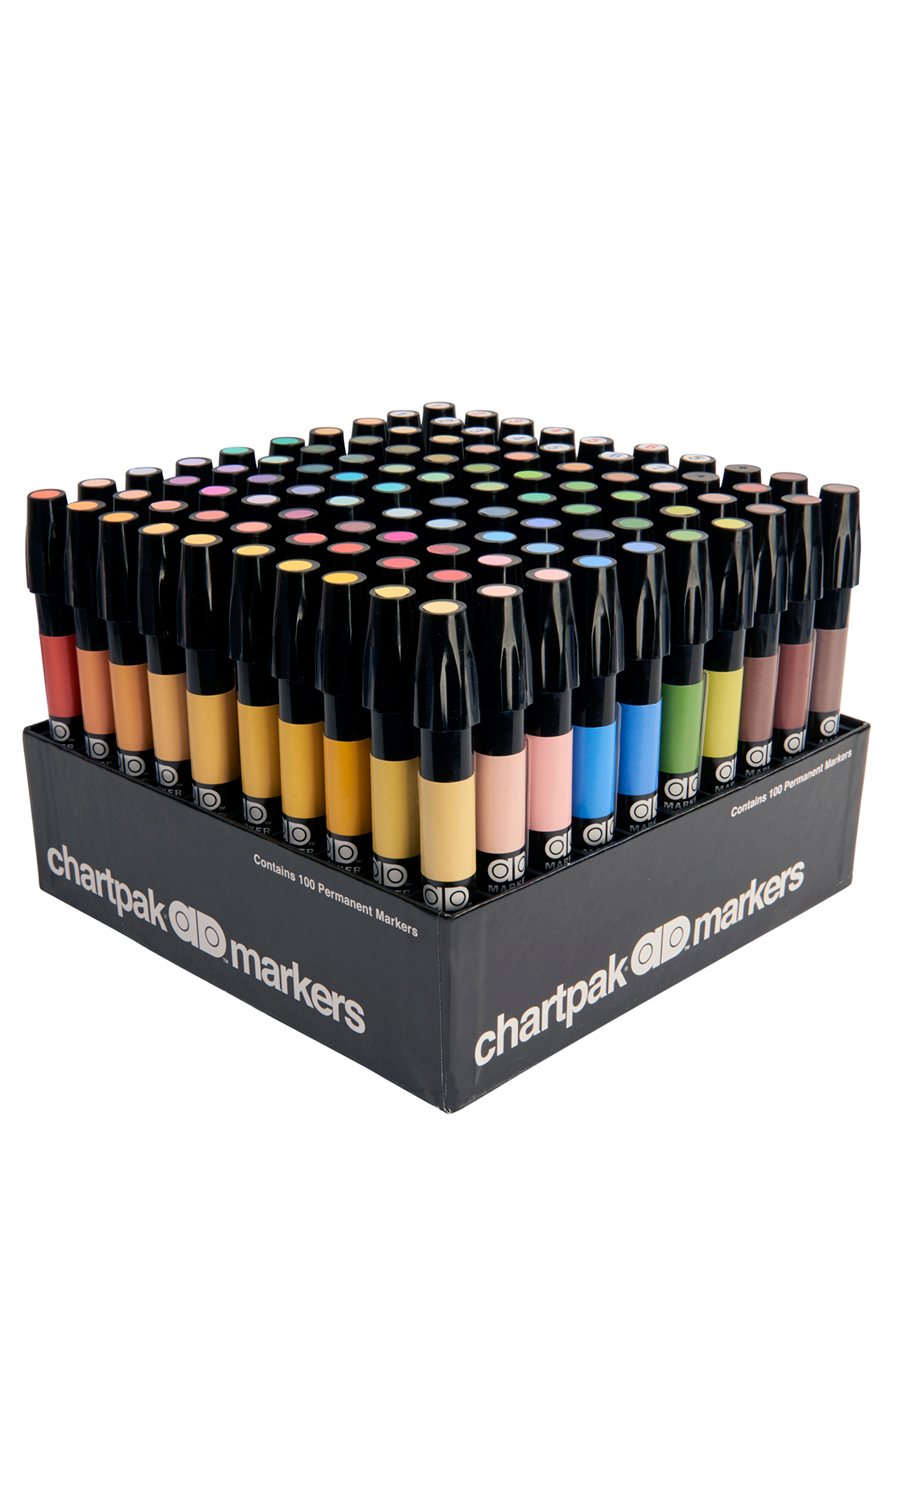 Chartpak Ad Marker Bundle - Set of 19 – Make & Mend